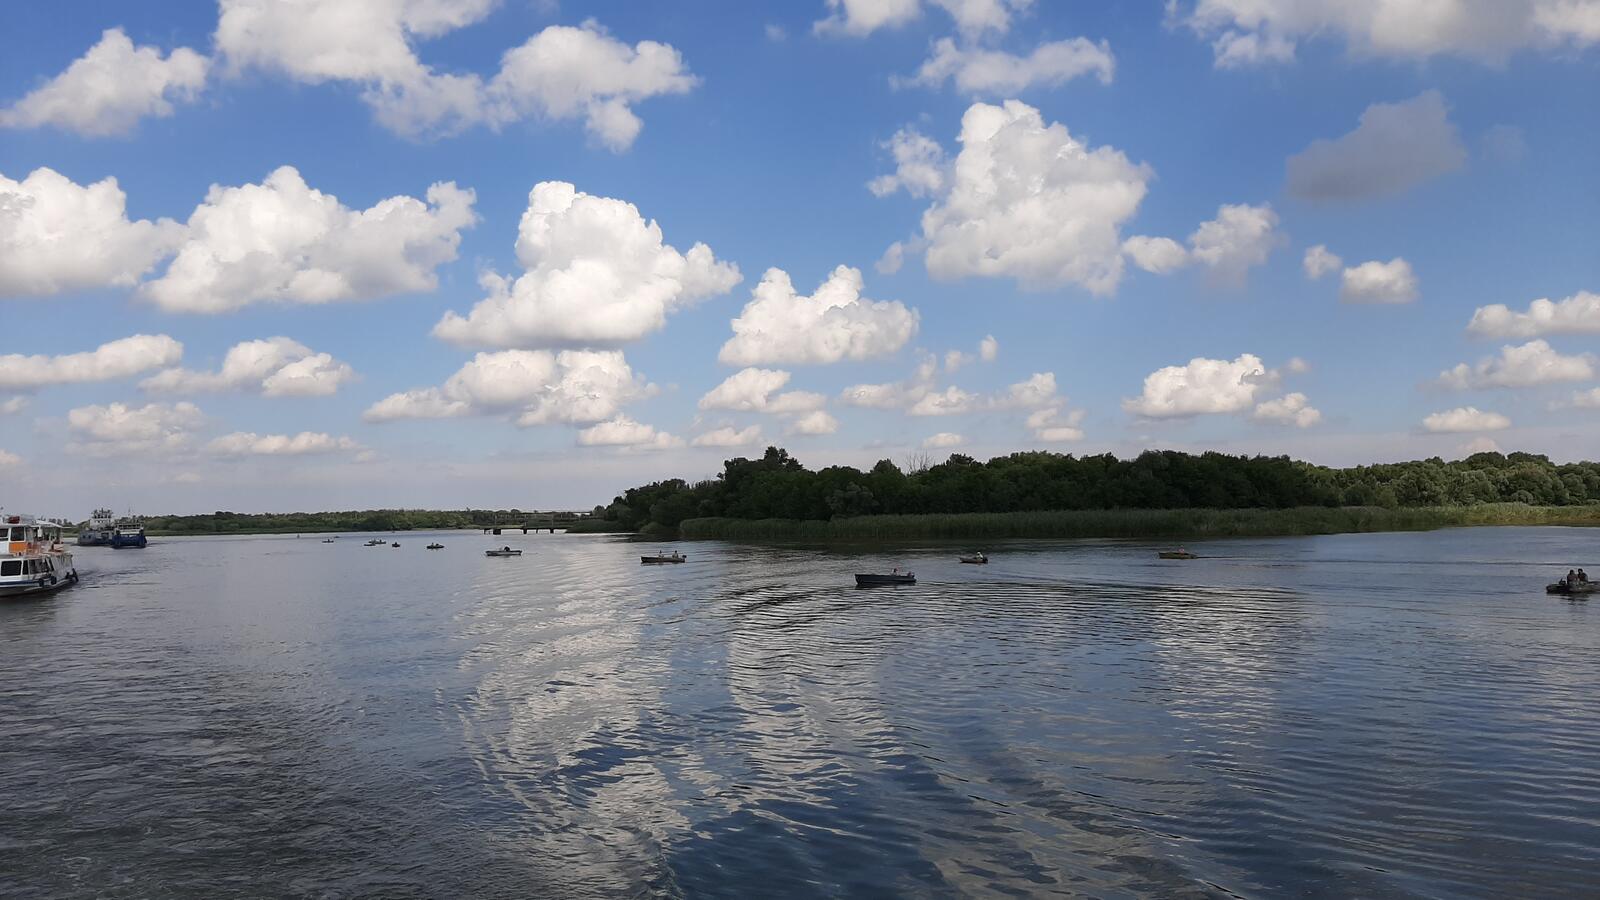 Бесплатное фото Массовое скопление катеров на реке Дон